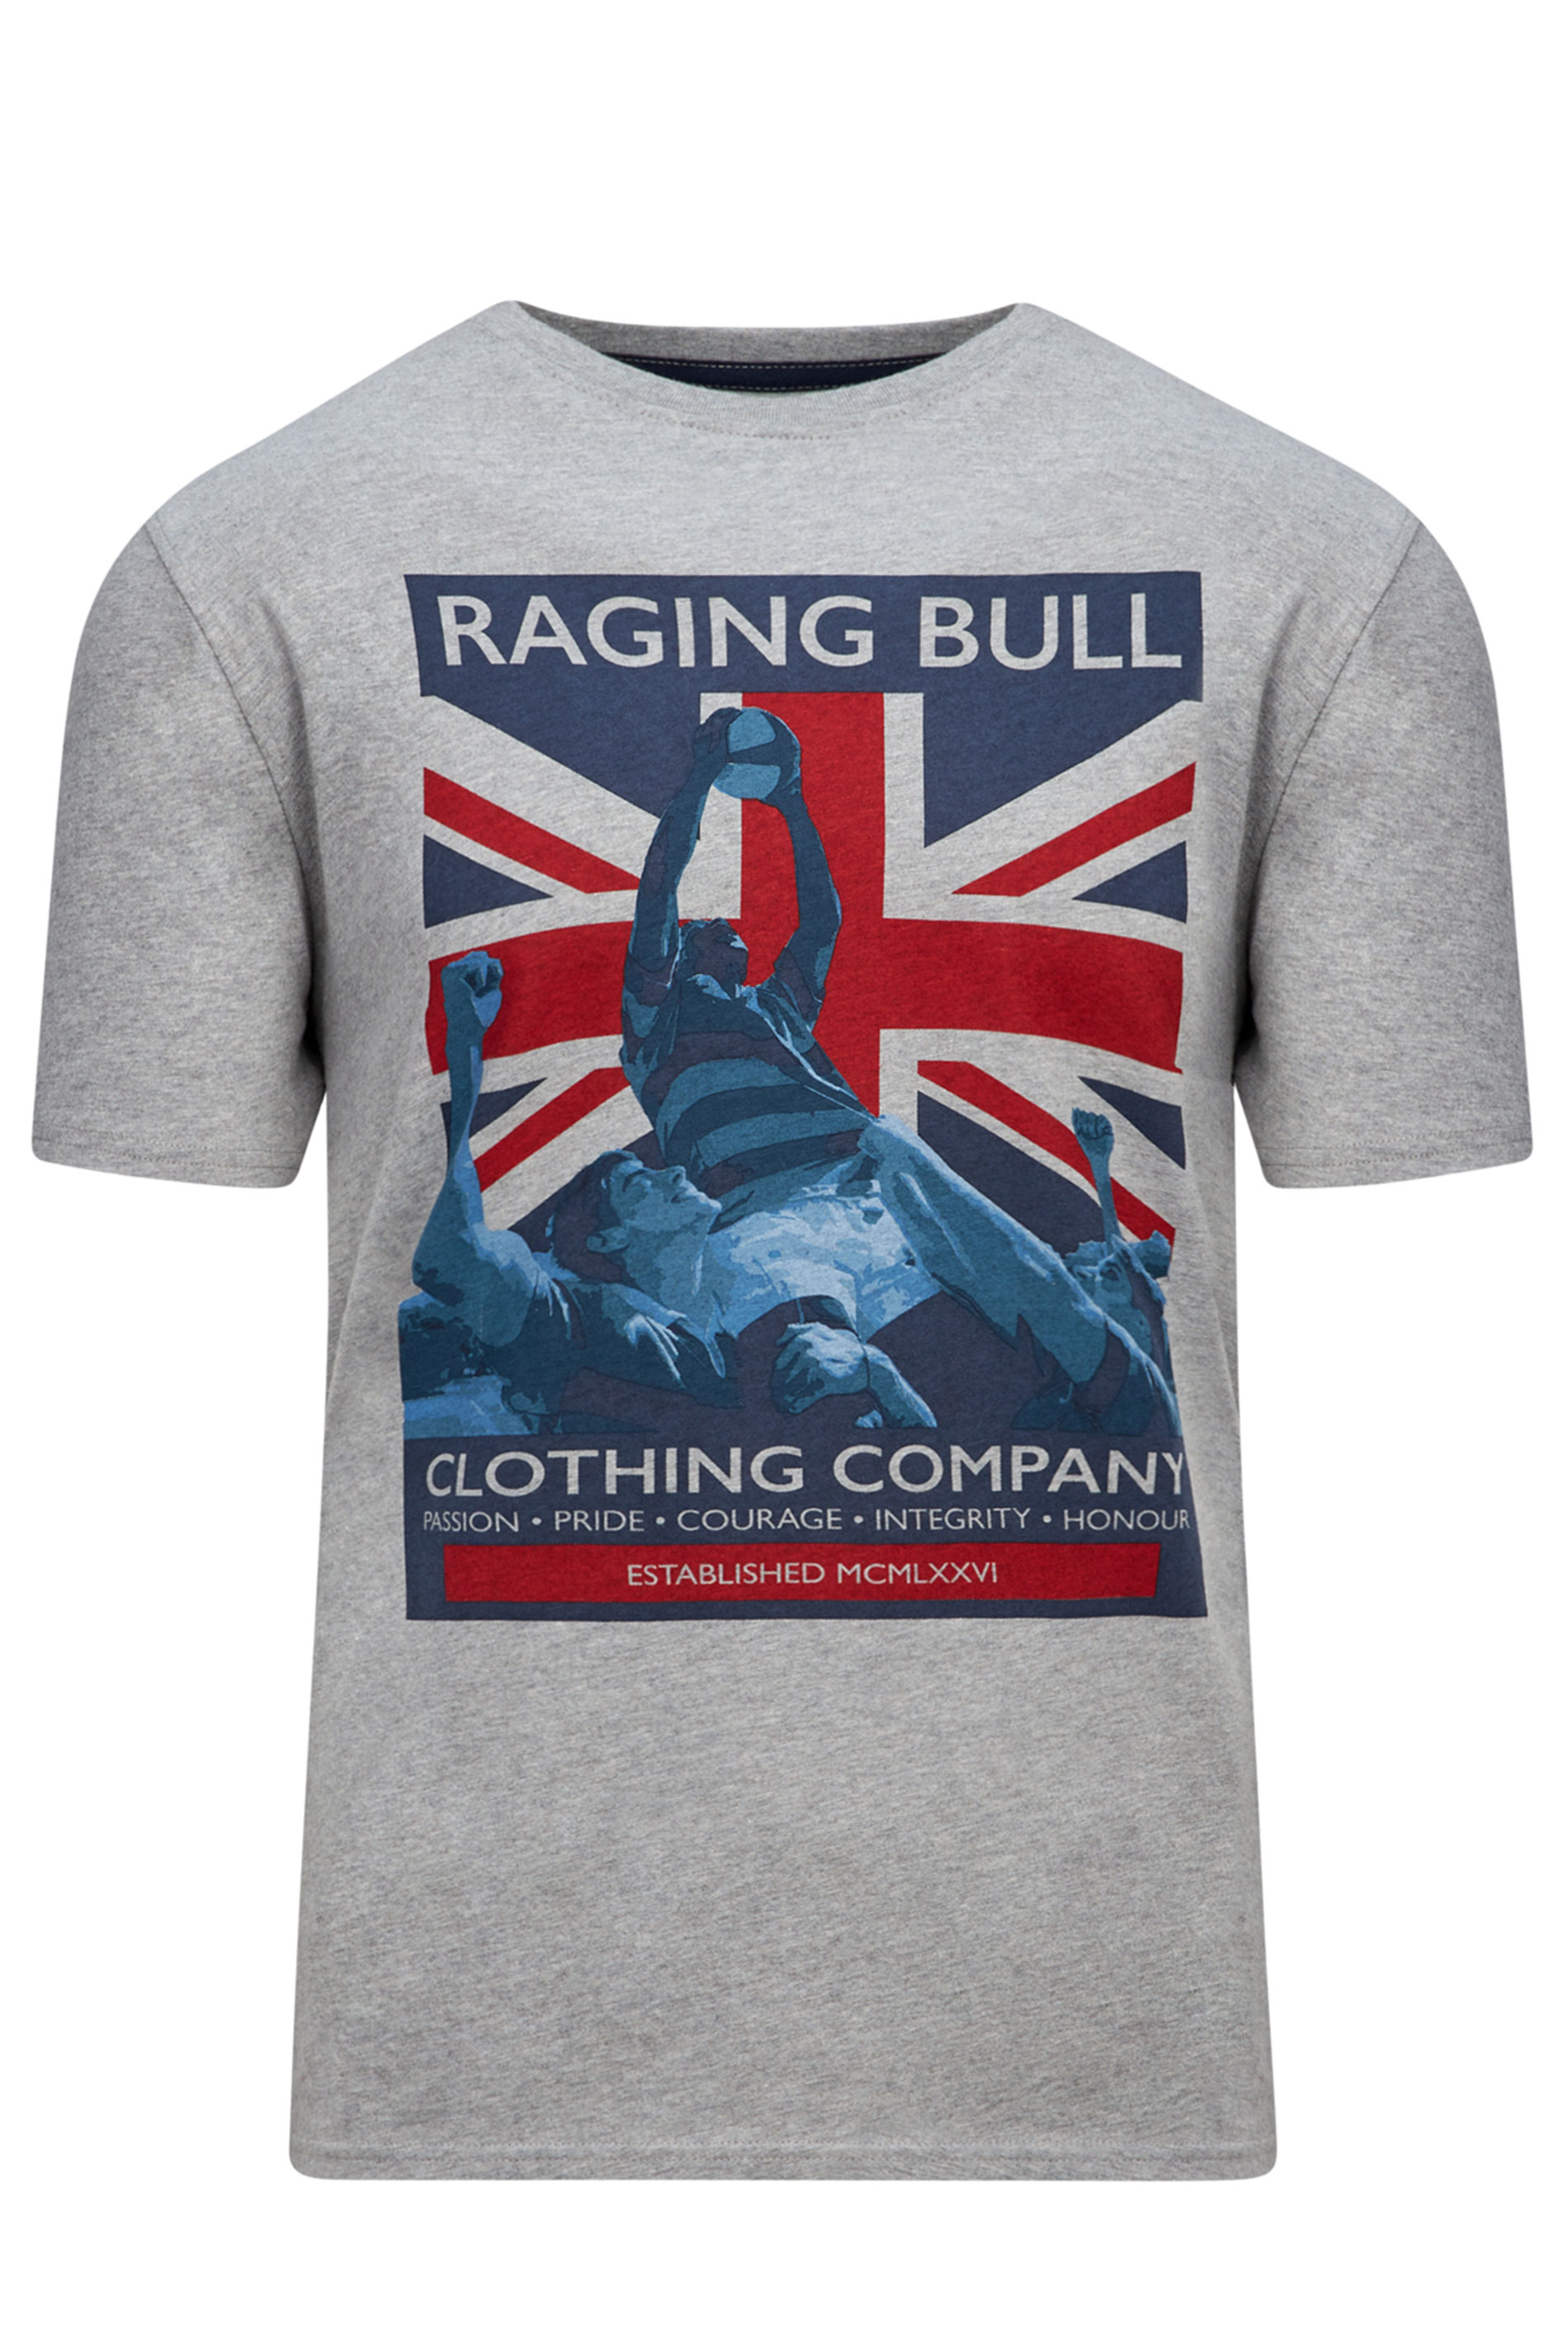 RAGING BULL Grey Union Jack T-Shirt | BadRhino  2